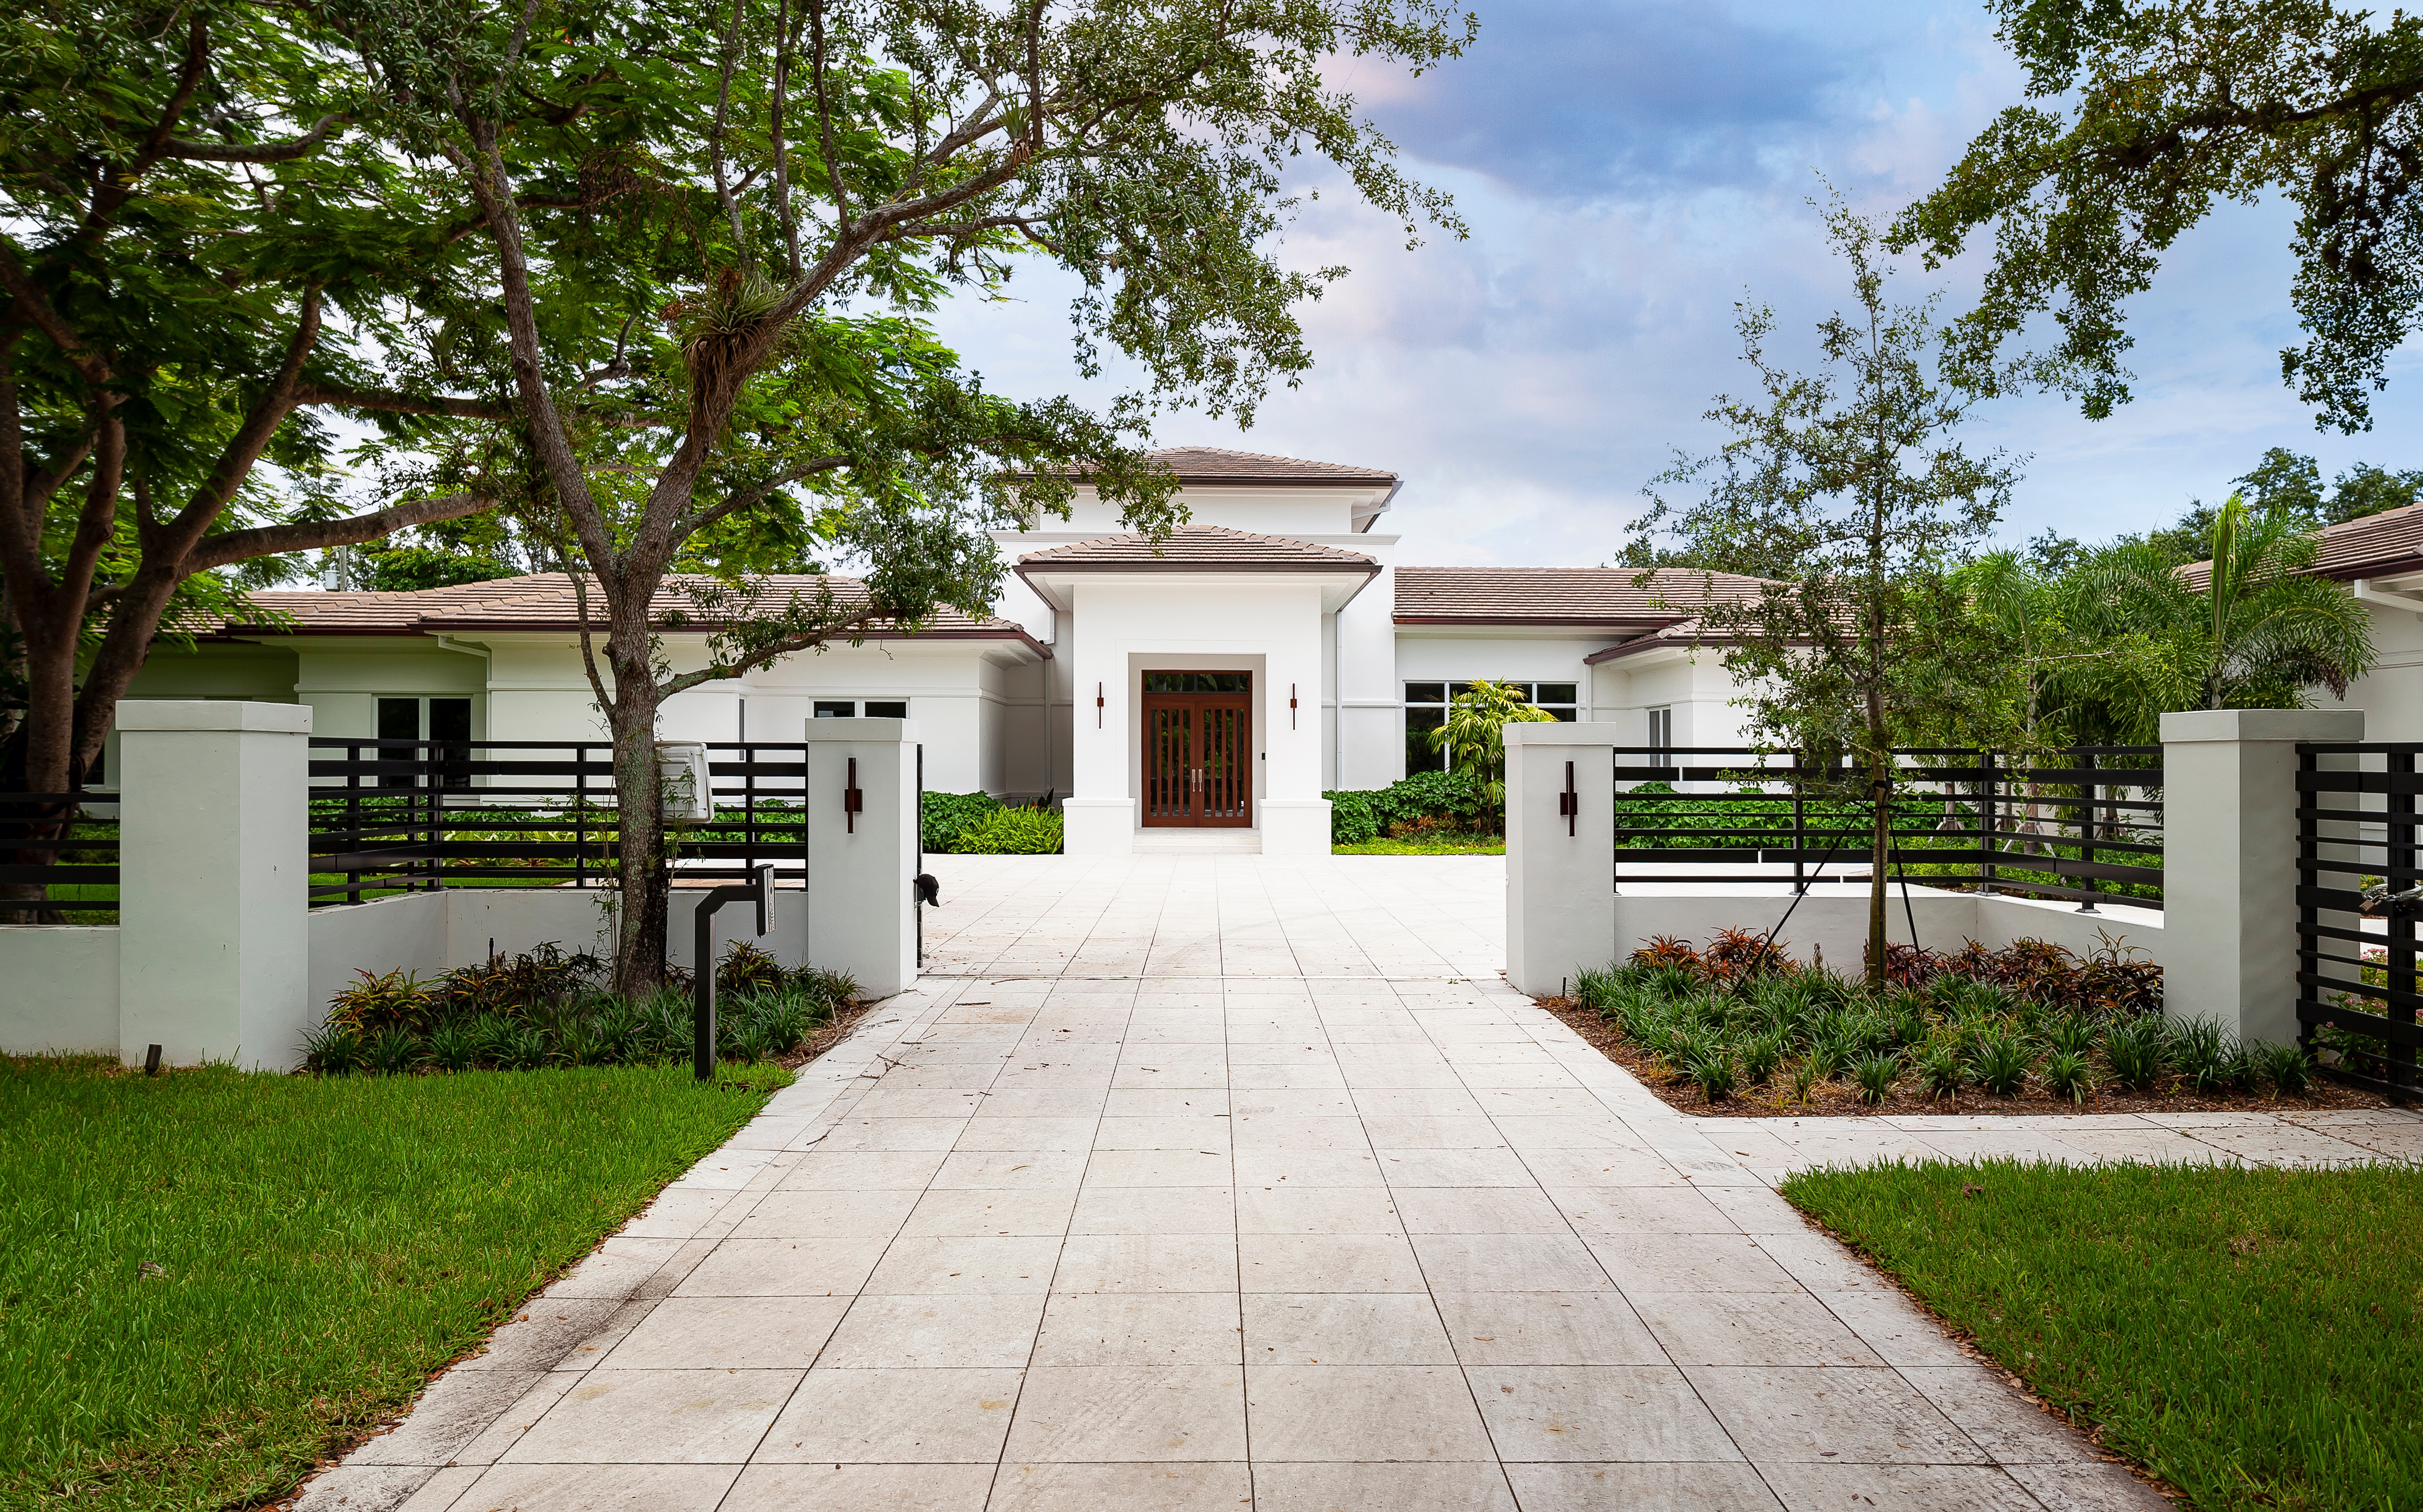 Elegante entrada a una mansión. | Fuente: Shutterstock